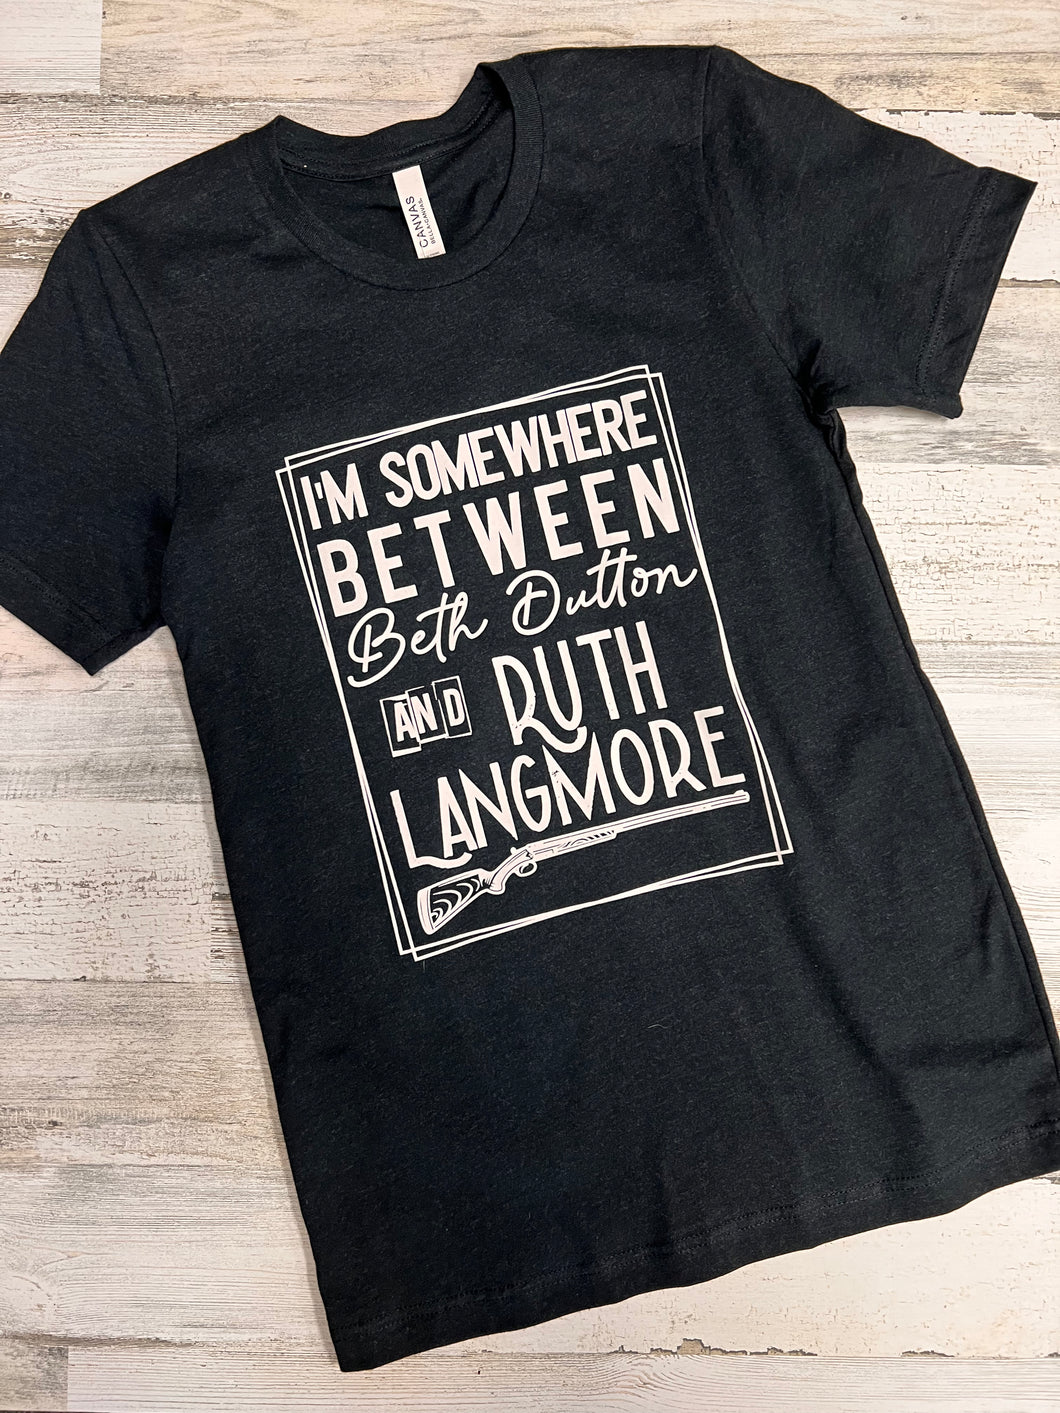 Beth Dutton/Ruth Langmore Shirt